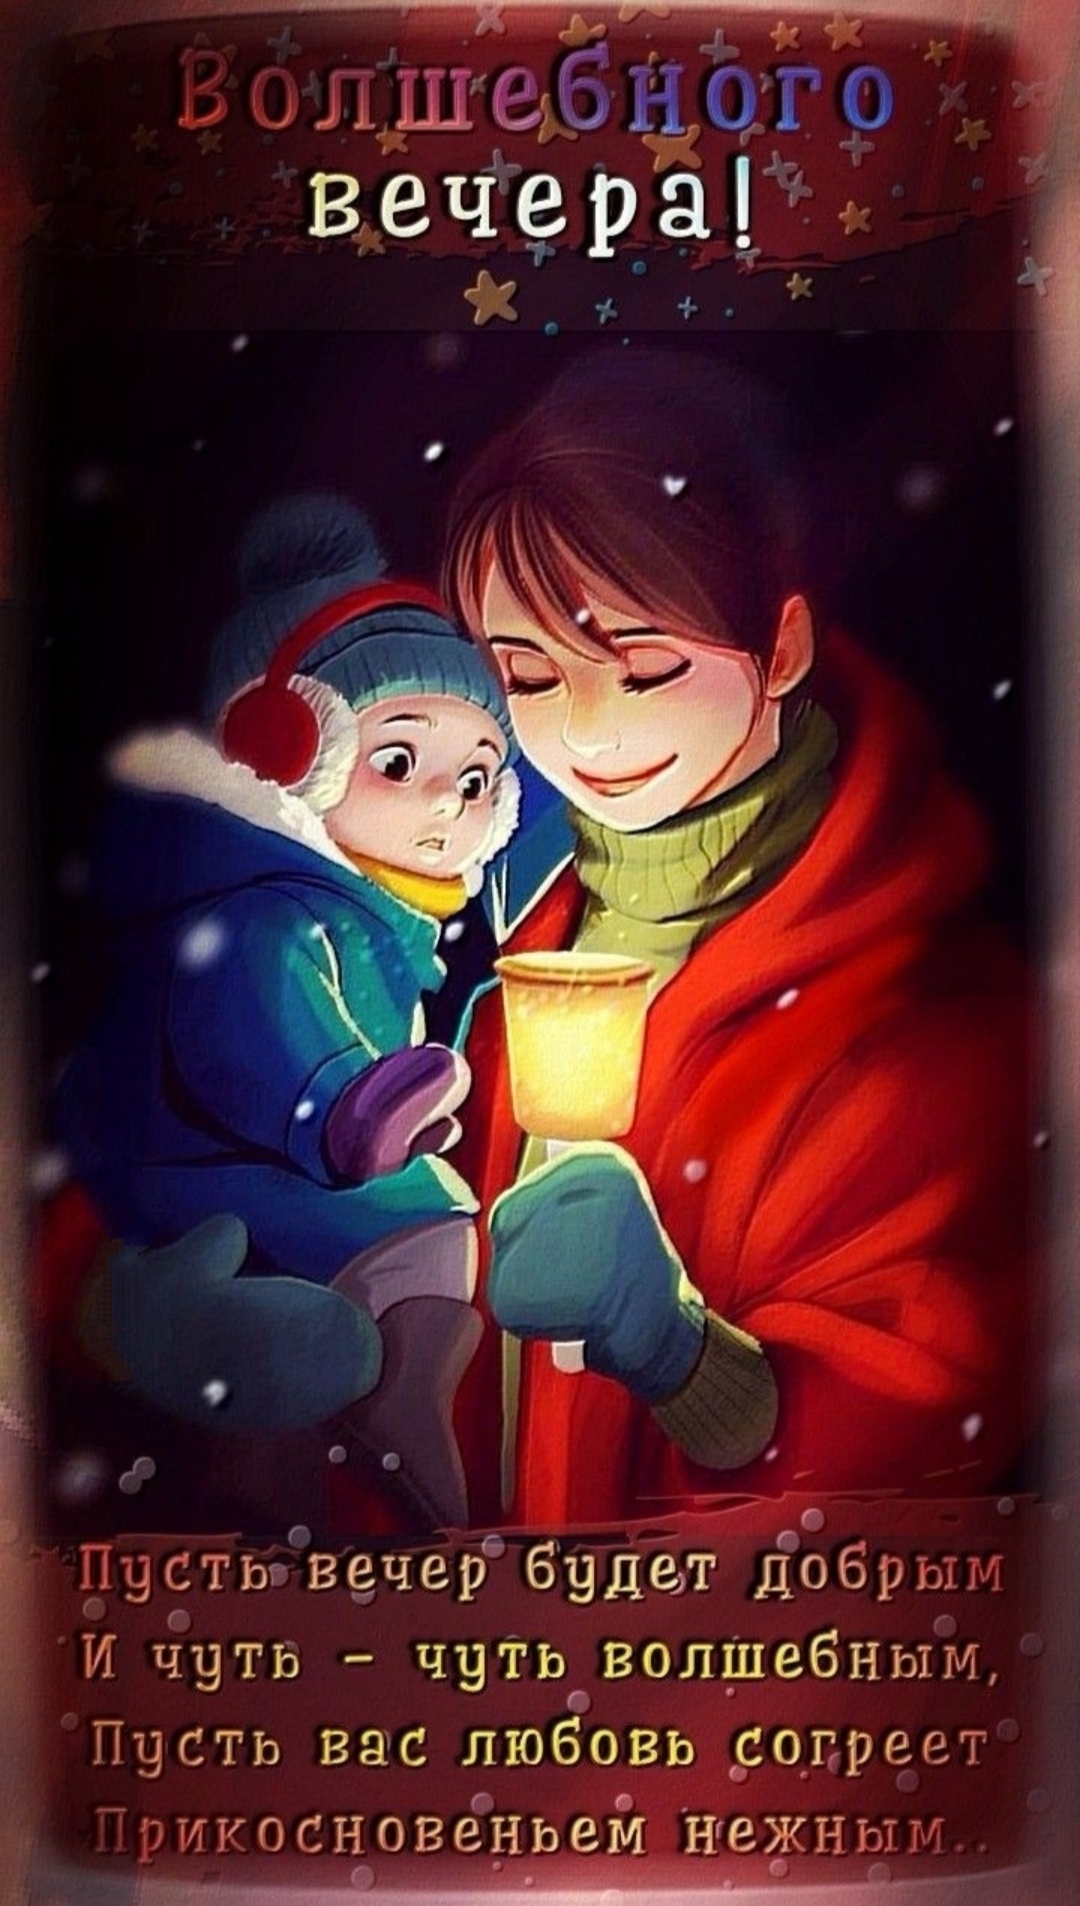 Доброго зимнего вечера! - красивые картинки и пожелания - Интересные зимние открытки с пожеланиями и надписями Добрый вечер